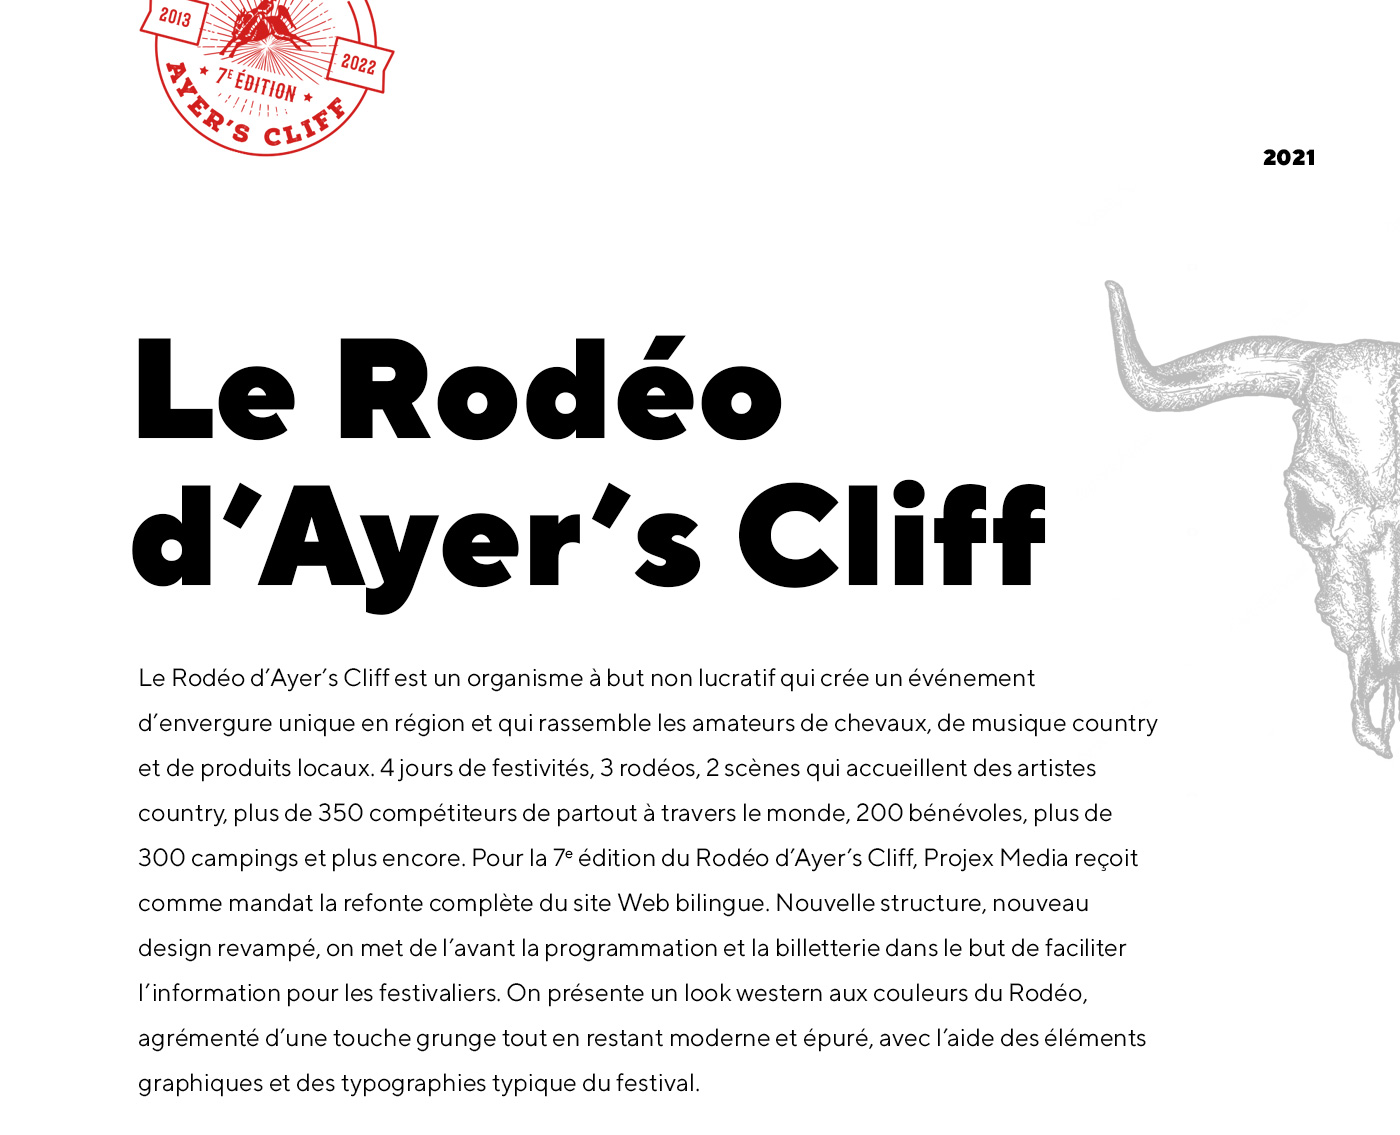 Conception de site web pour le Rodéo d'Ayer's Cliff / 2021 - Réalisation signée Projex Media